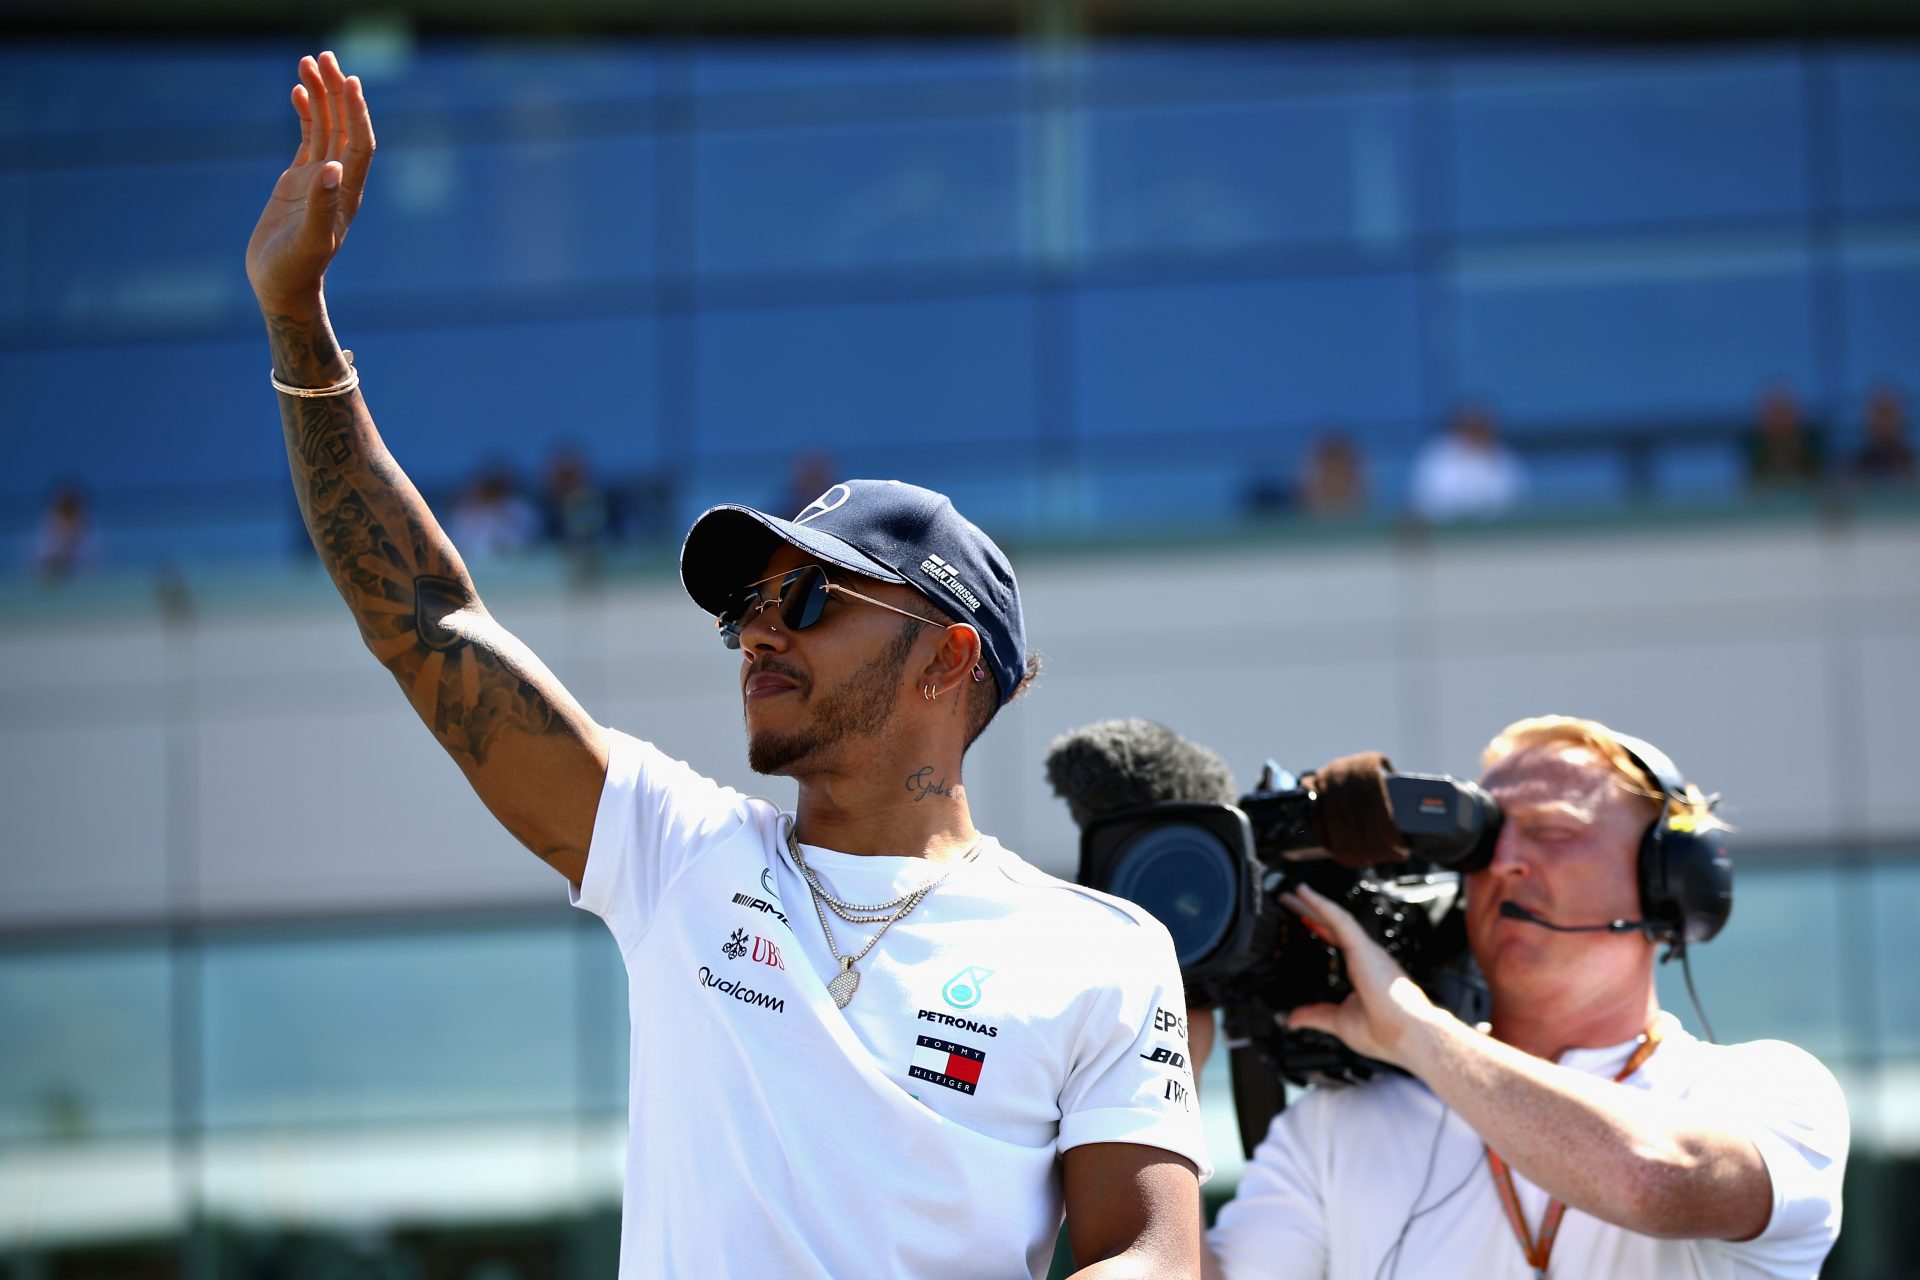 Lewis Hamilton (Mercedes): 55 milioni di dollari